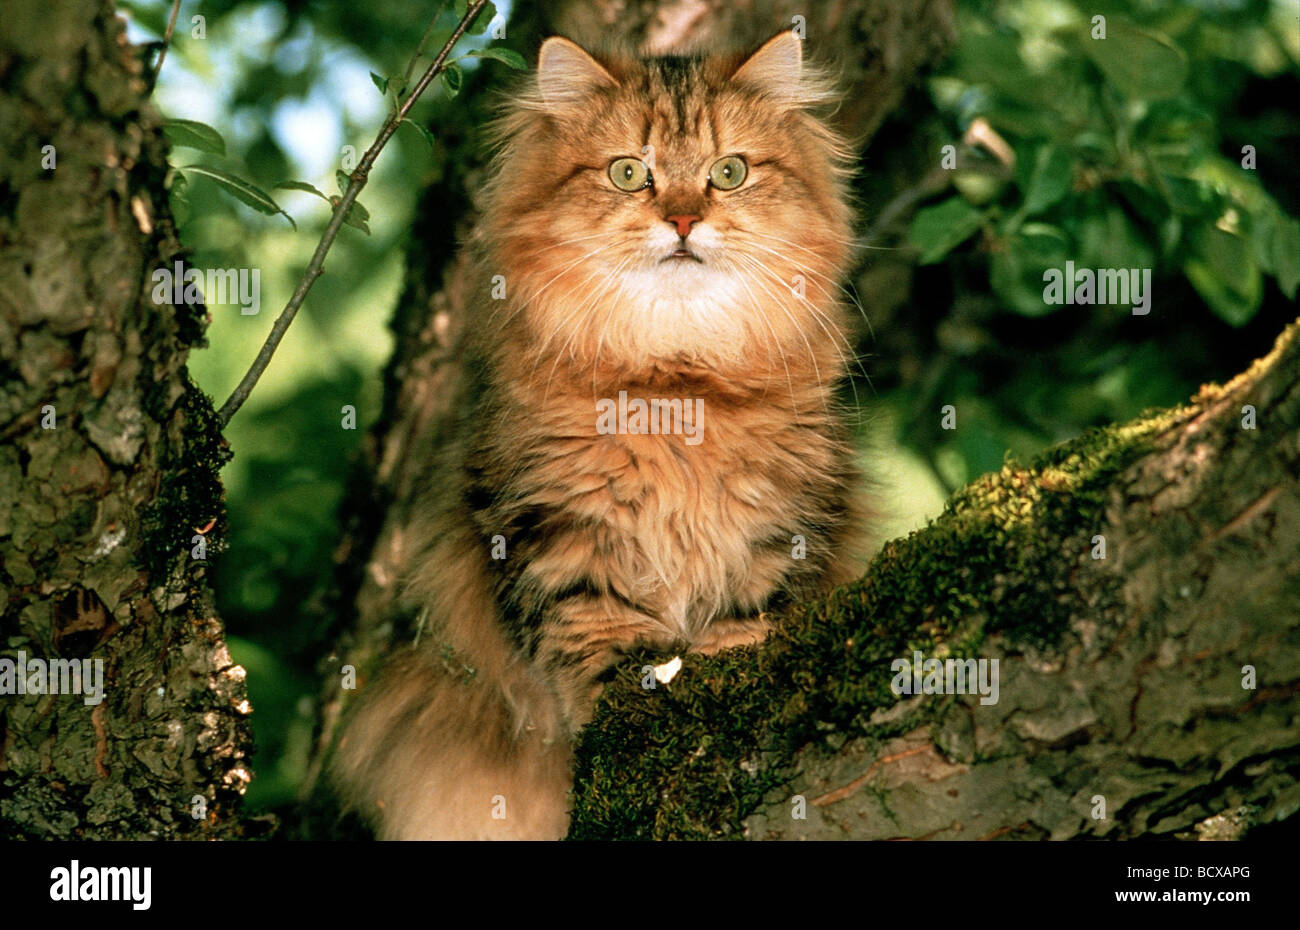 Golden ombreggiato gatto persiano seduta nella struttura ad albero Foto Stock